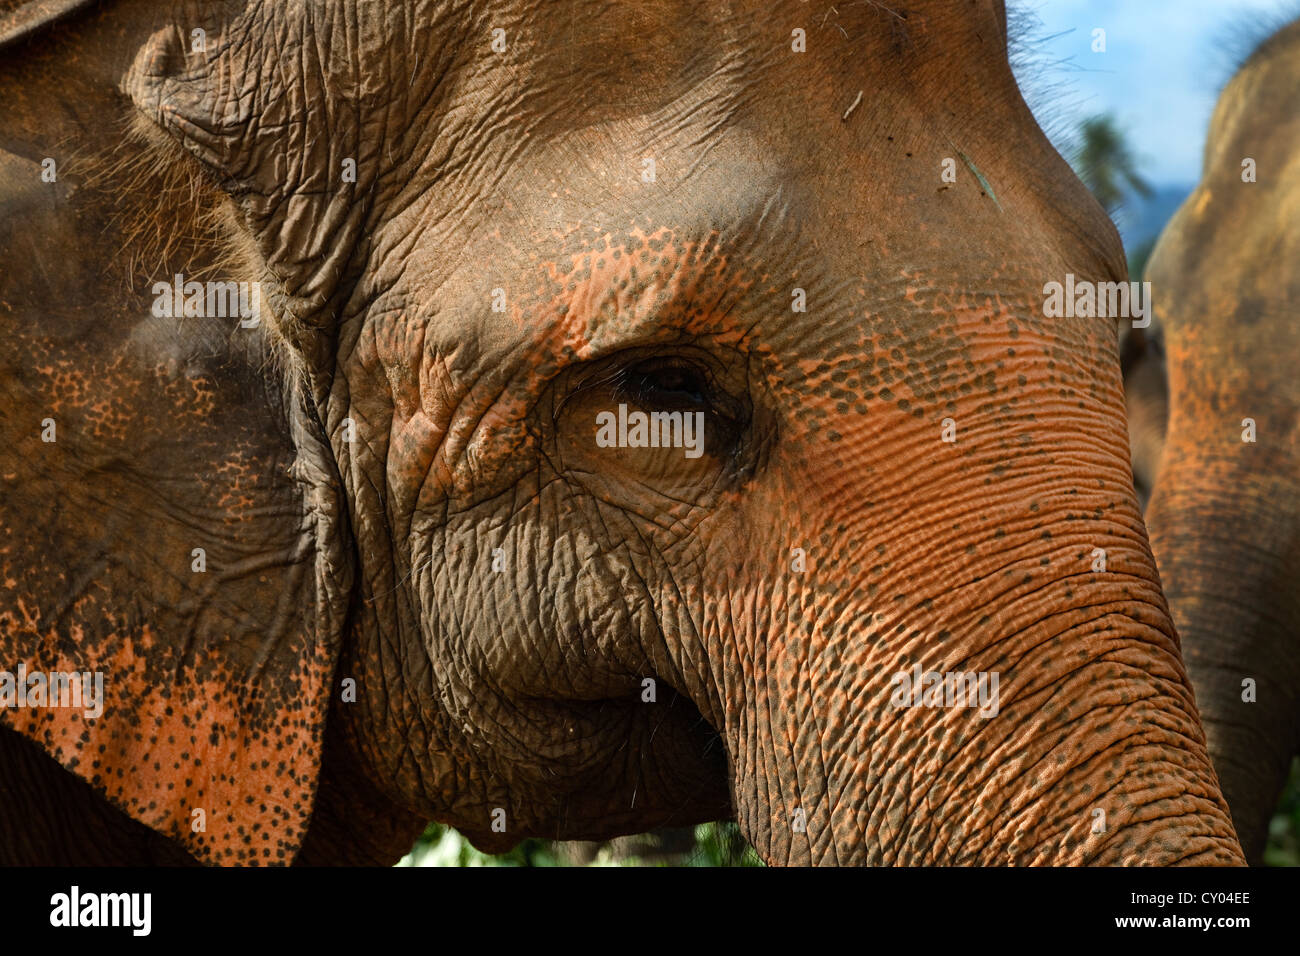 Sri Lanka Elefant zeigt die identifizierende Pigmentierung zu diesen Tieren einzigartig Stockfoto